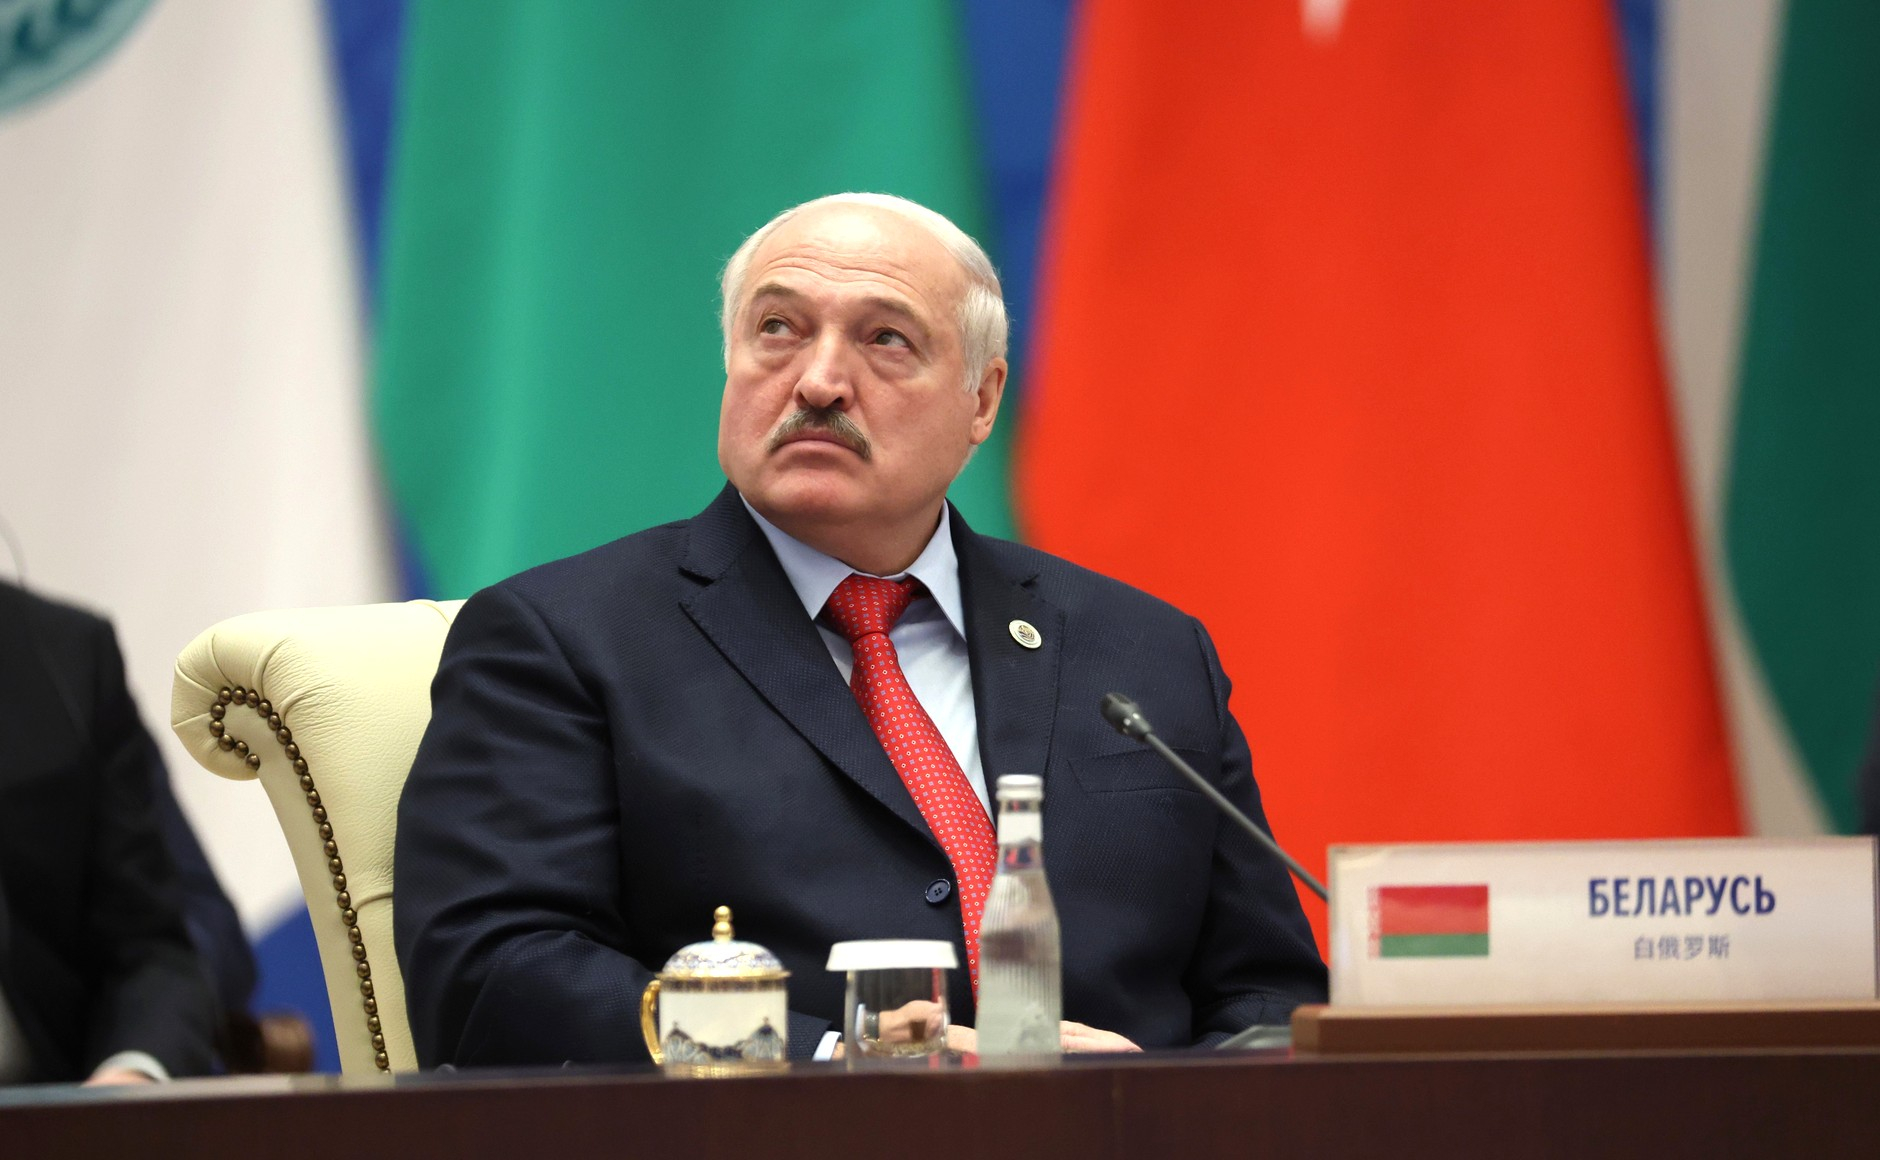 Лукашенко предрек полное уничтожение Украины